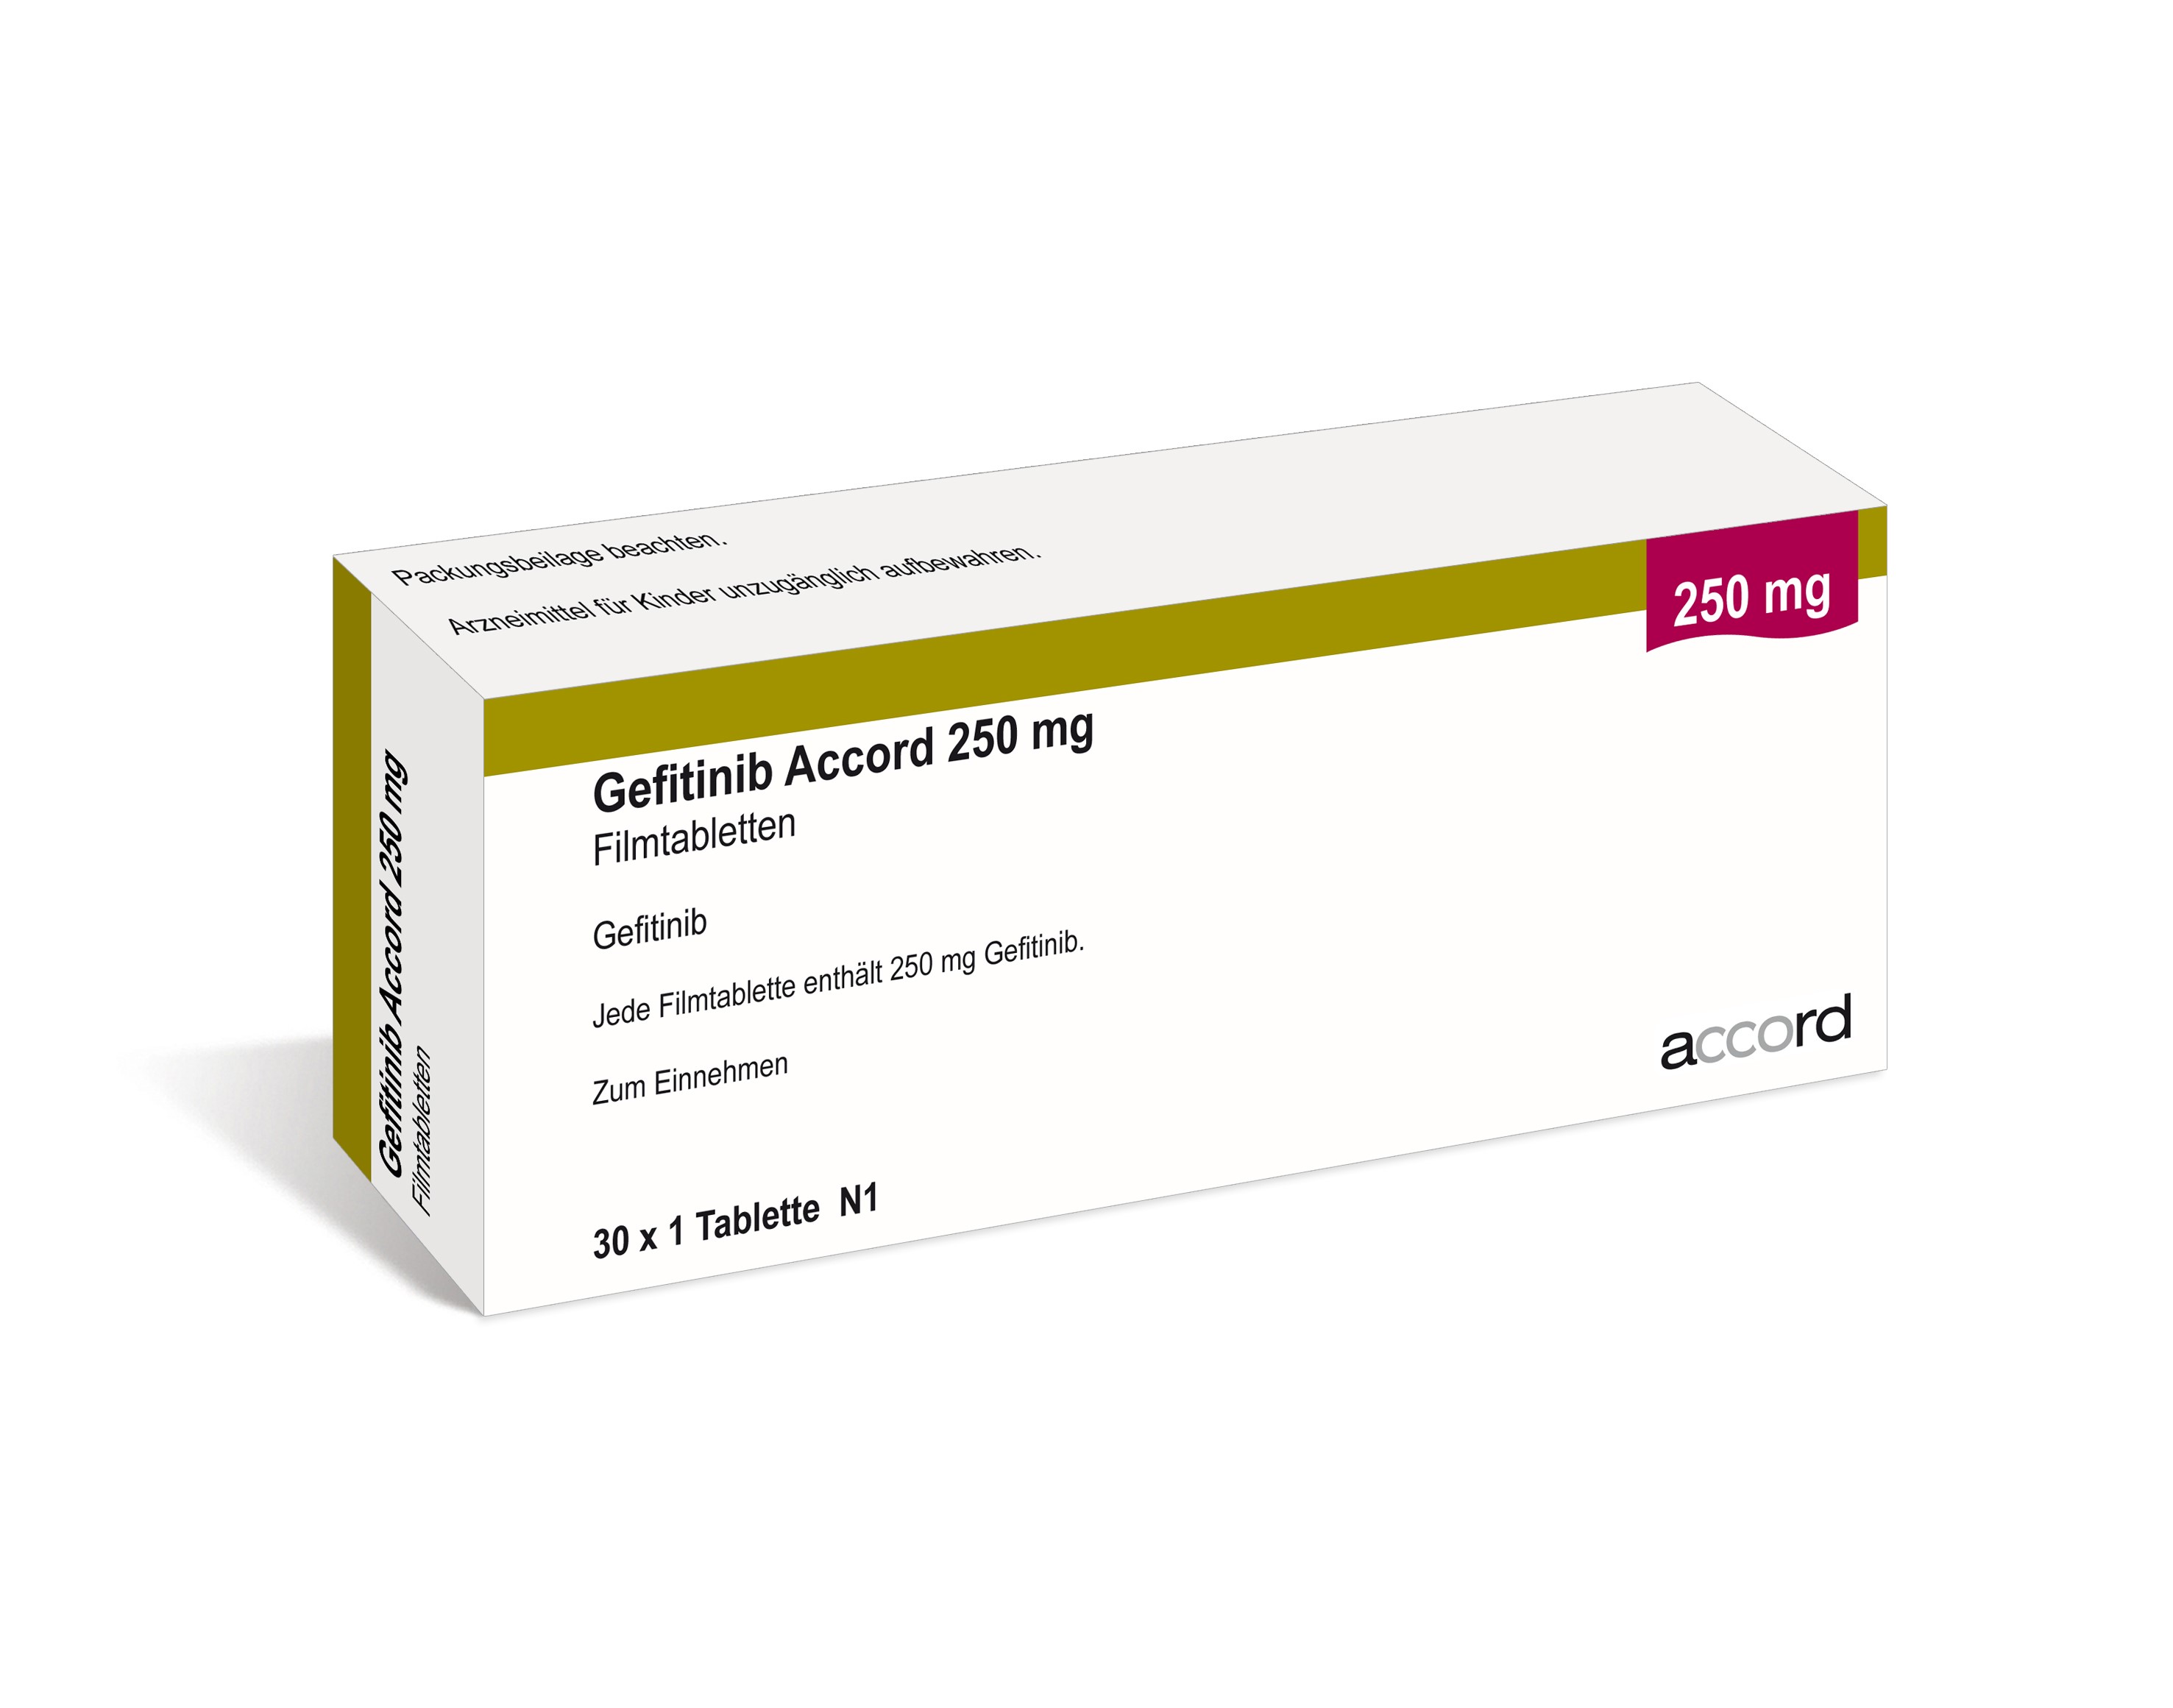 Accord Packshot Gefitnib 250 mg